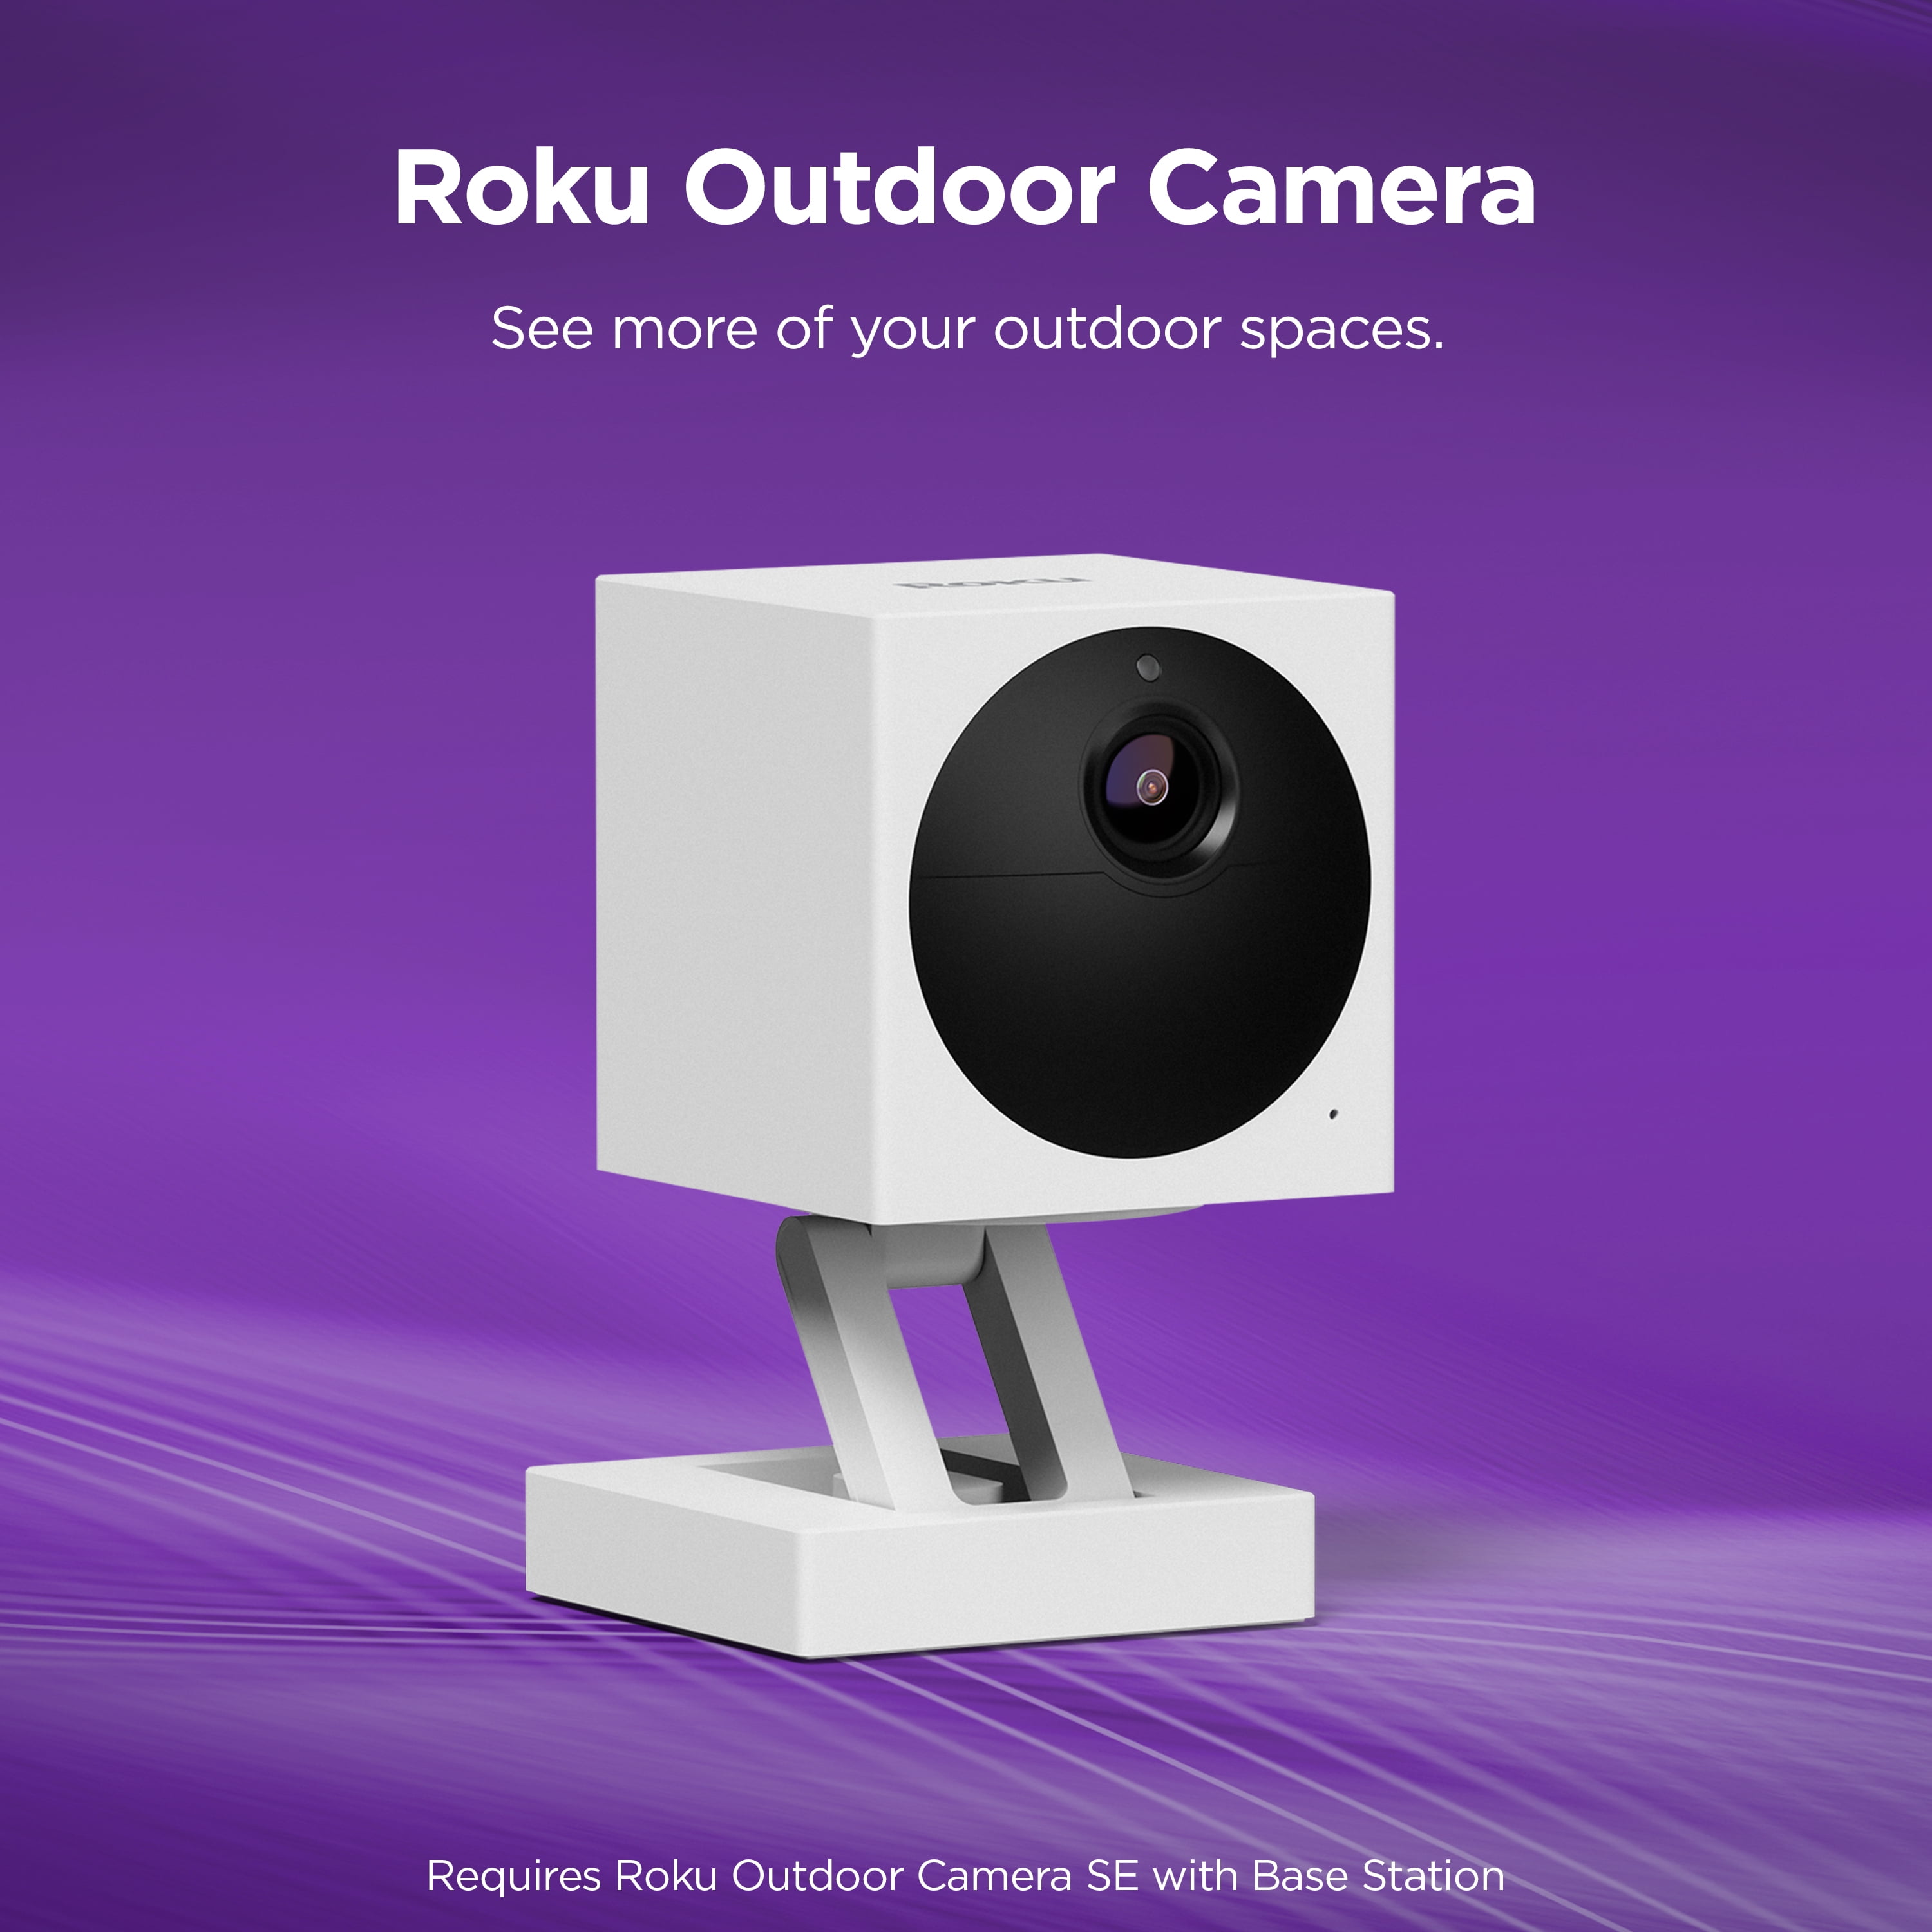 Roku Outdoor Camera SE, Outdoor Security Cameras